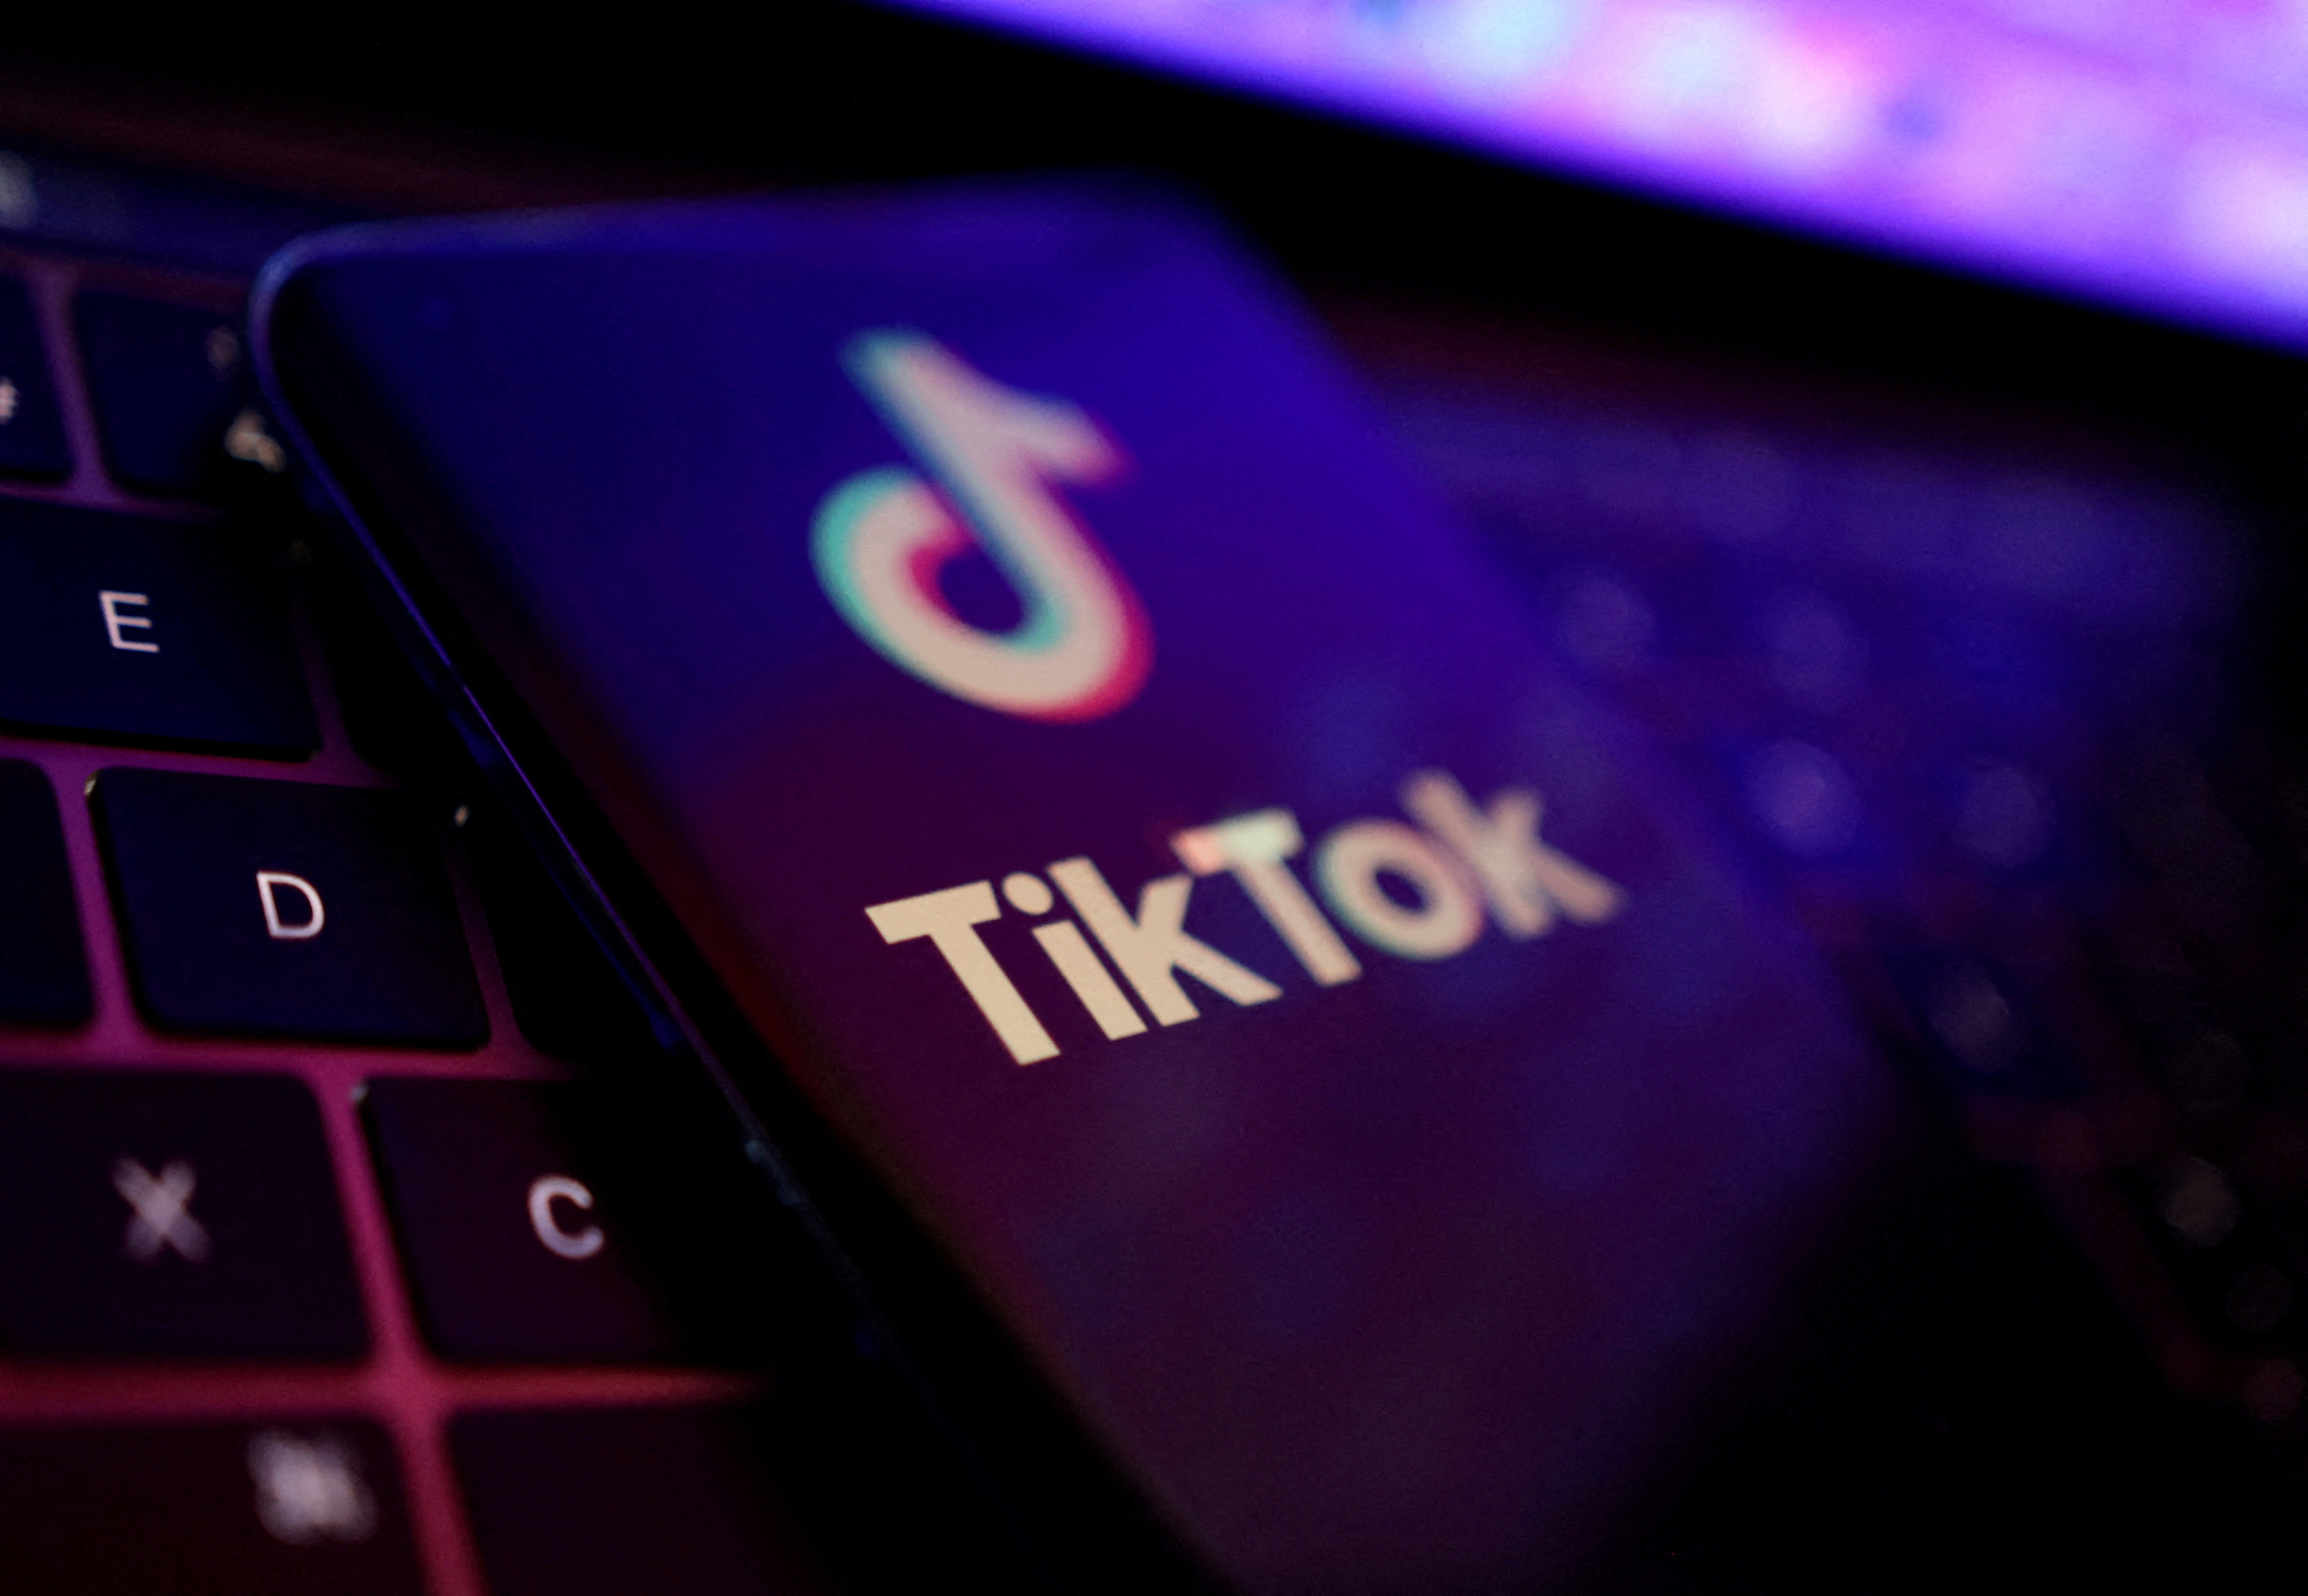 Le Royaume-Uni interdit TikTok sur les appareils gouvernementaux